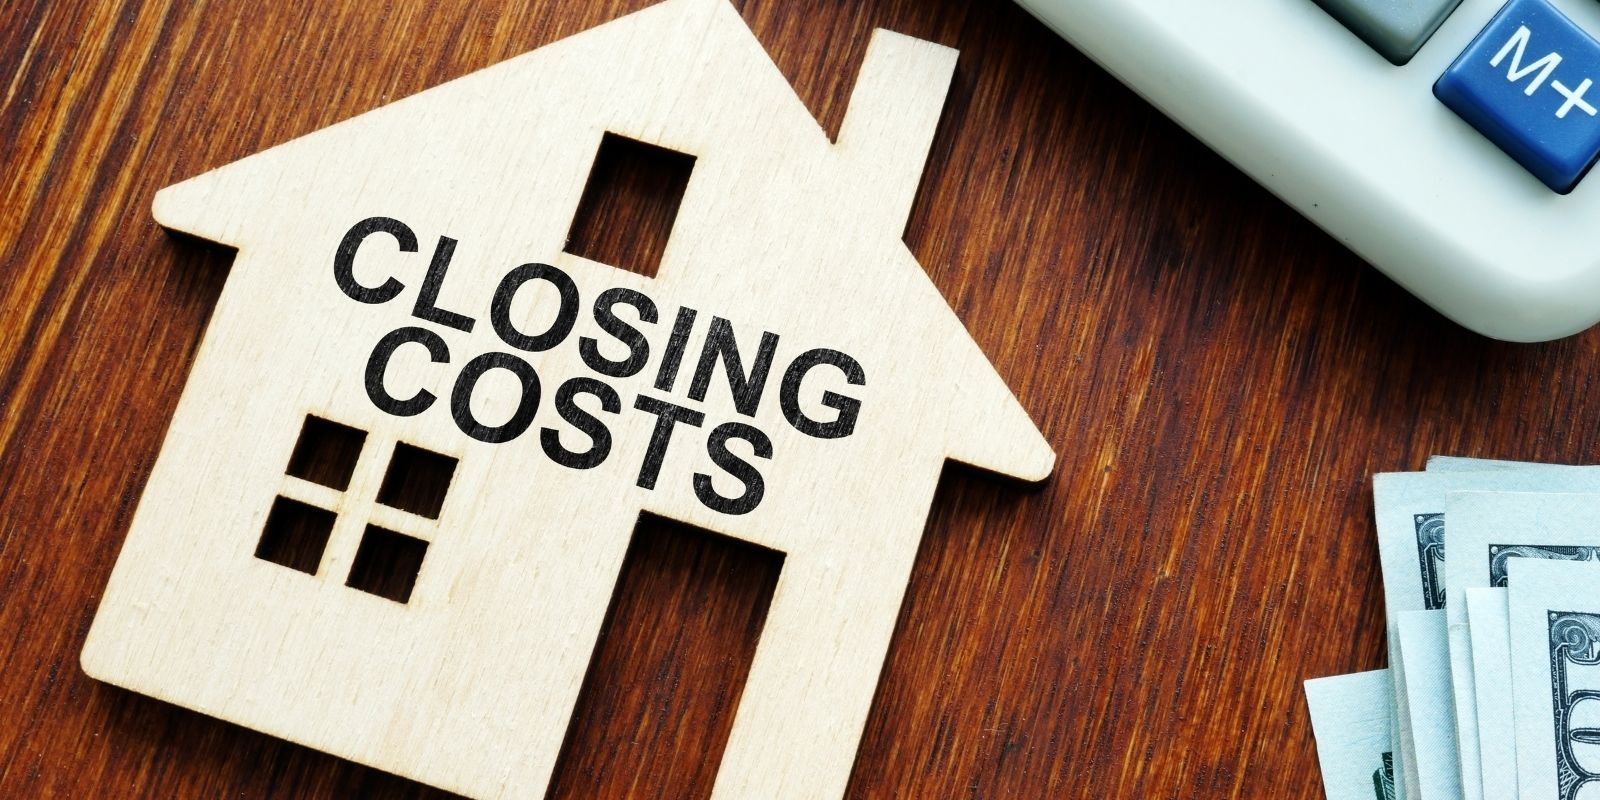 13. Not Negotiating Closing Costs